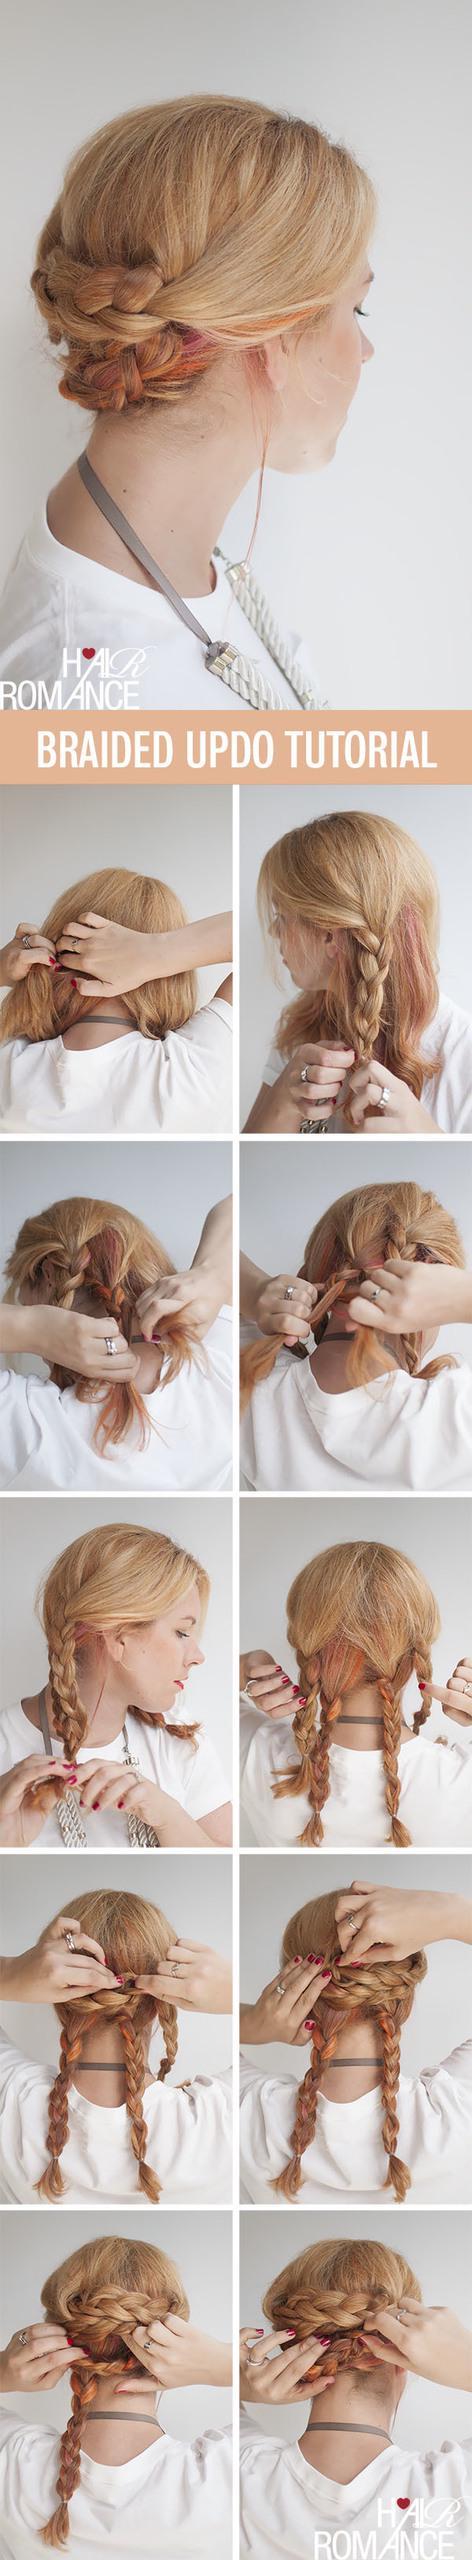 รูปภาพ:http://www.hairromance.com/wp-content/uploads/2013/12/Hair-Romance-Easy-braided-updo-hairstyle-tutorial.jpg